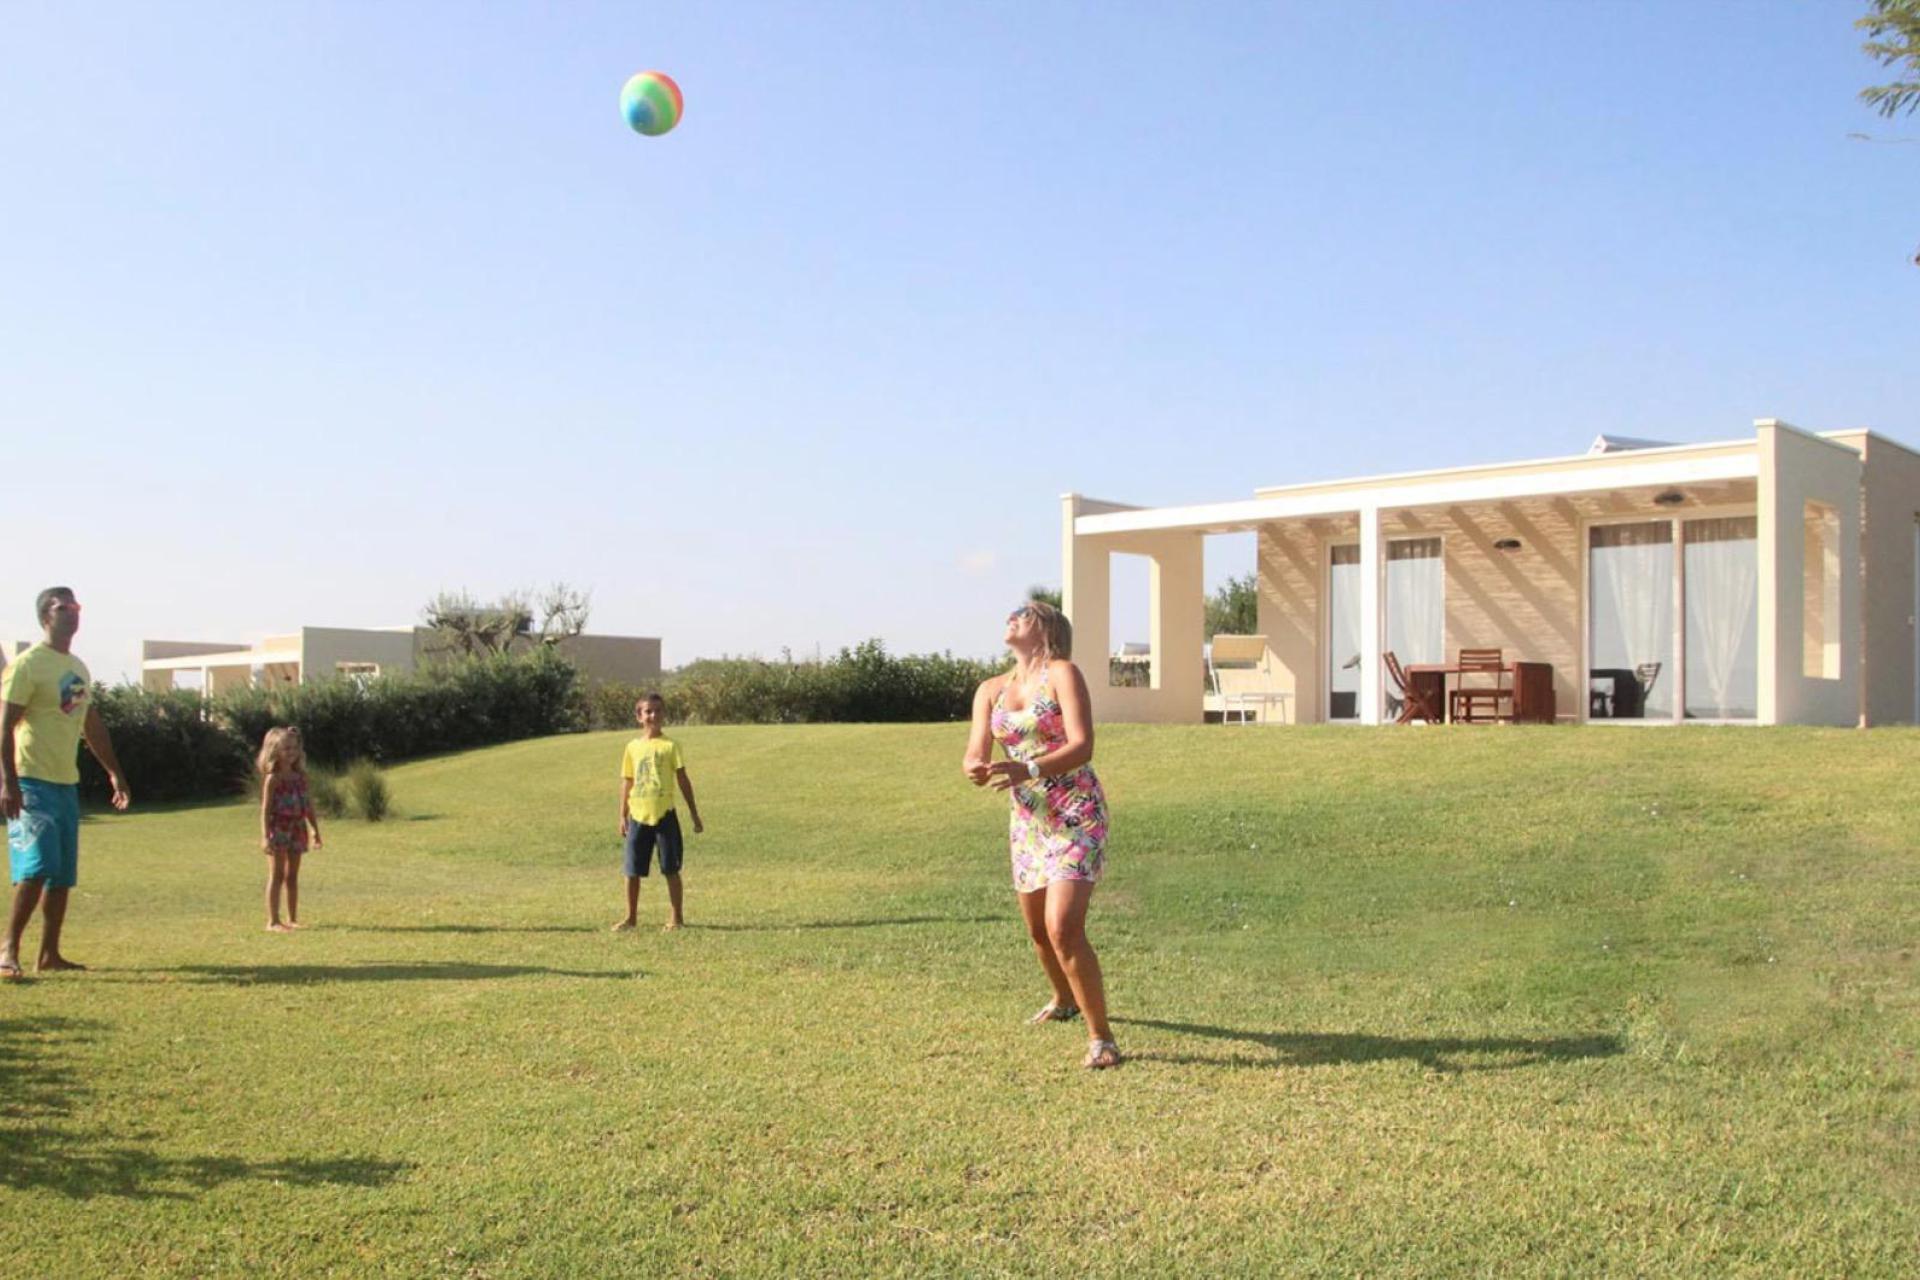 Lussuoso parco vacanze in Sicilia con bungalow moderni